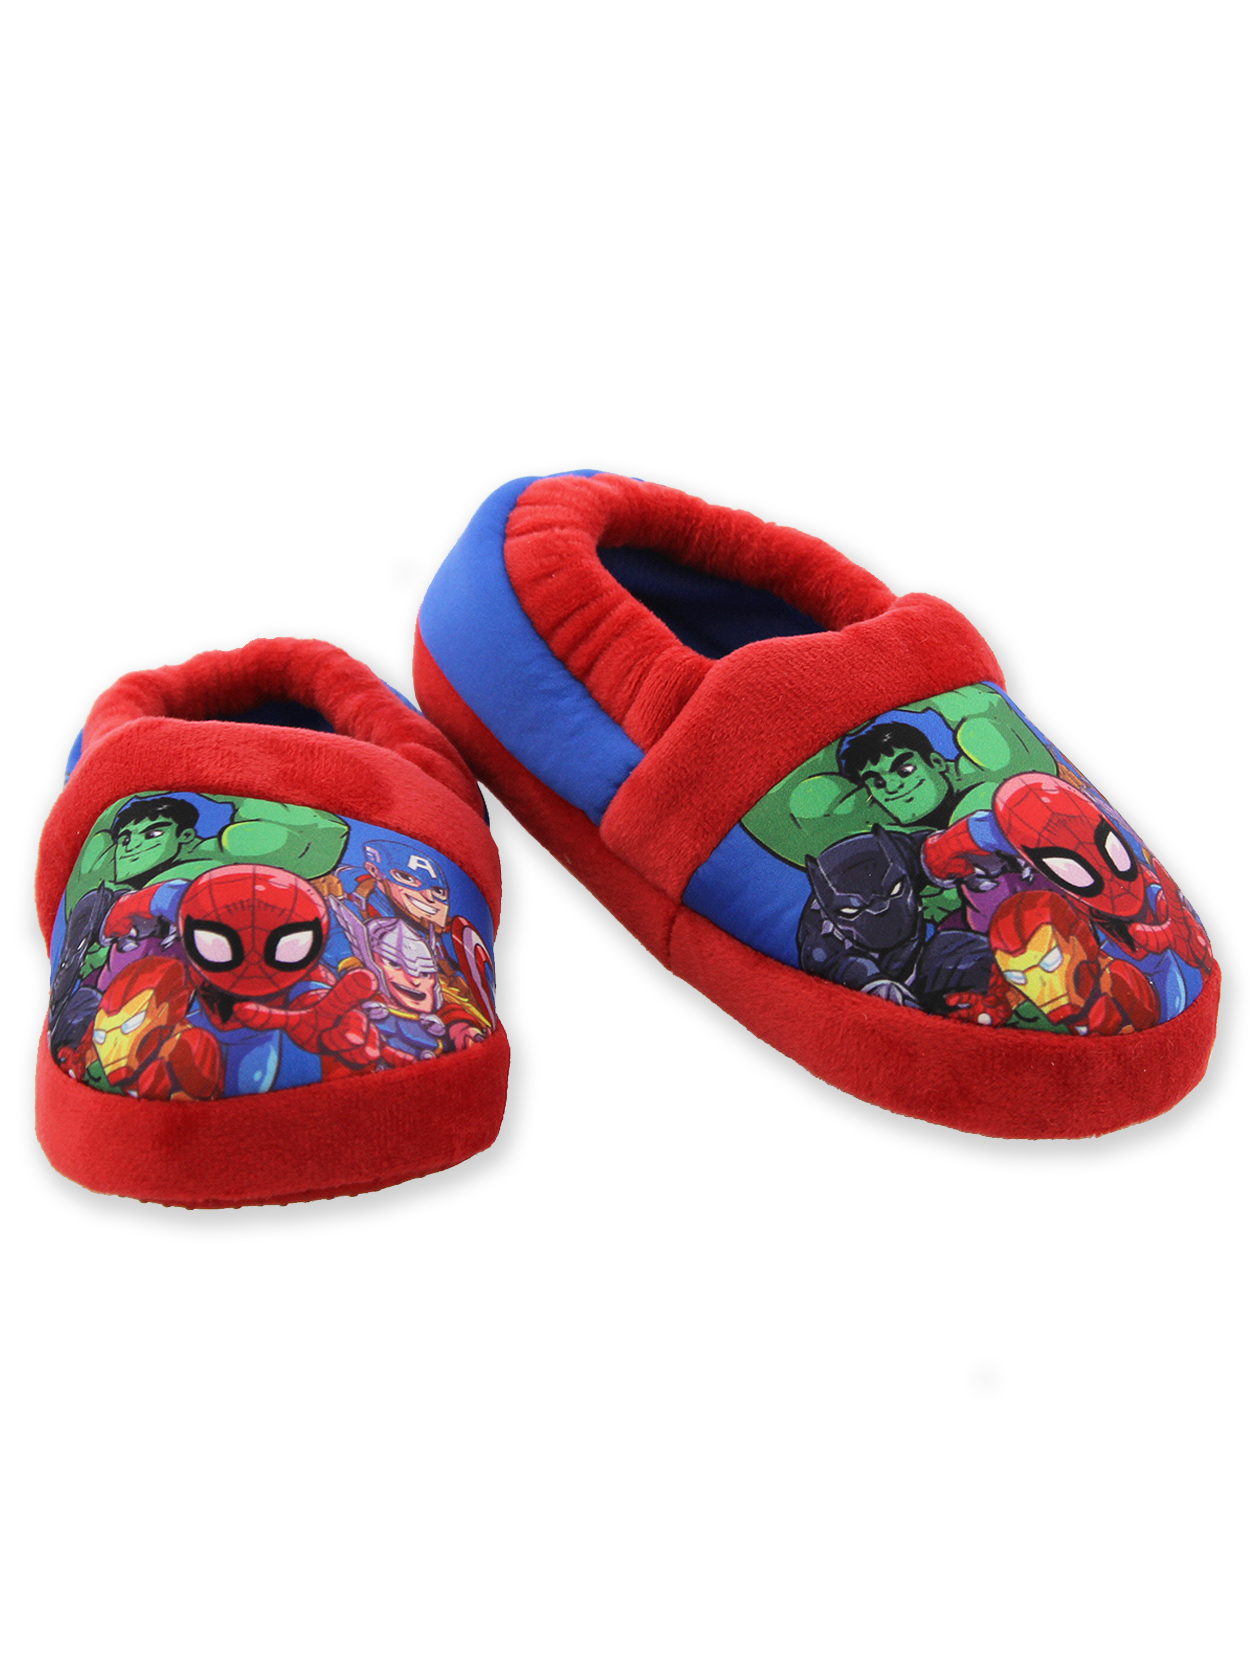 Marvel Super Hero Adventures Avengers Boy's Toddler Plush Aline Slippers AVF227Y - image 1 of 7